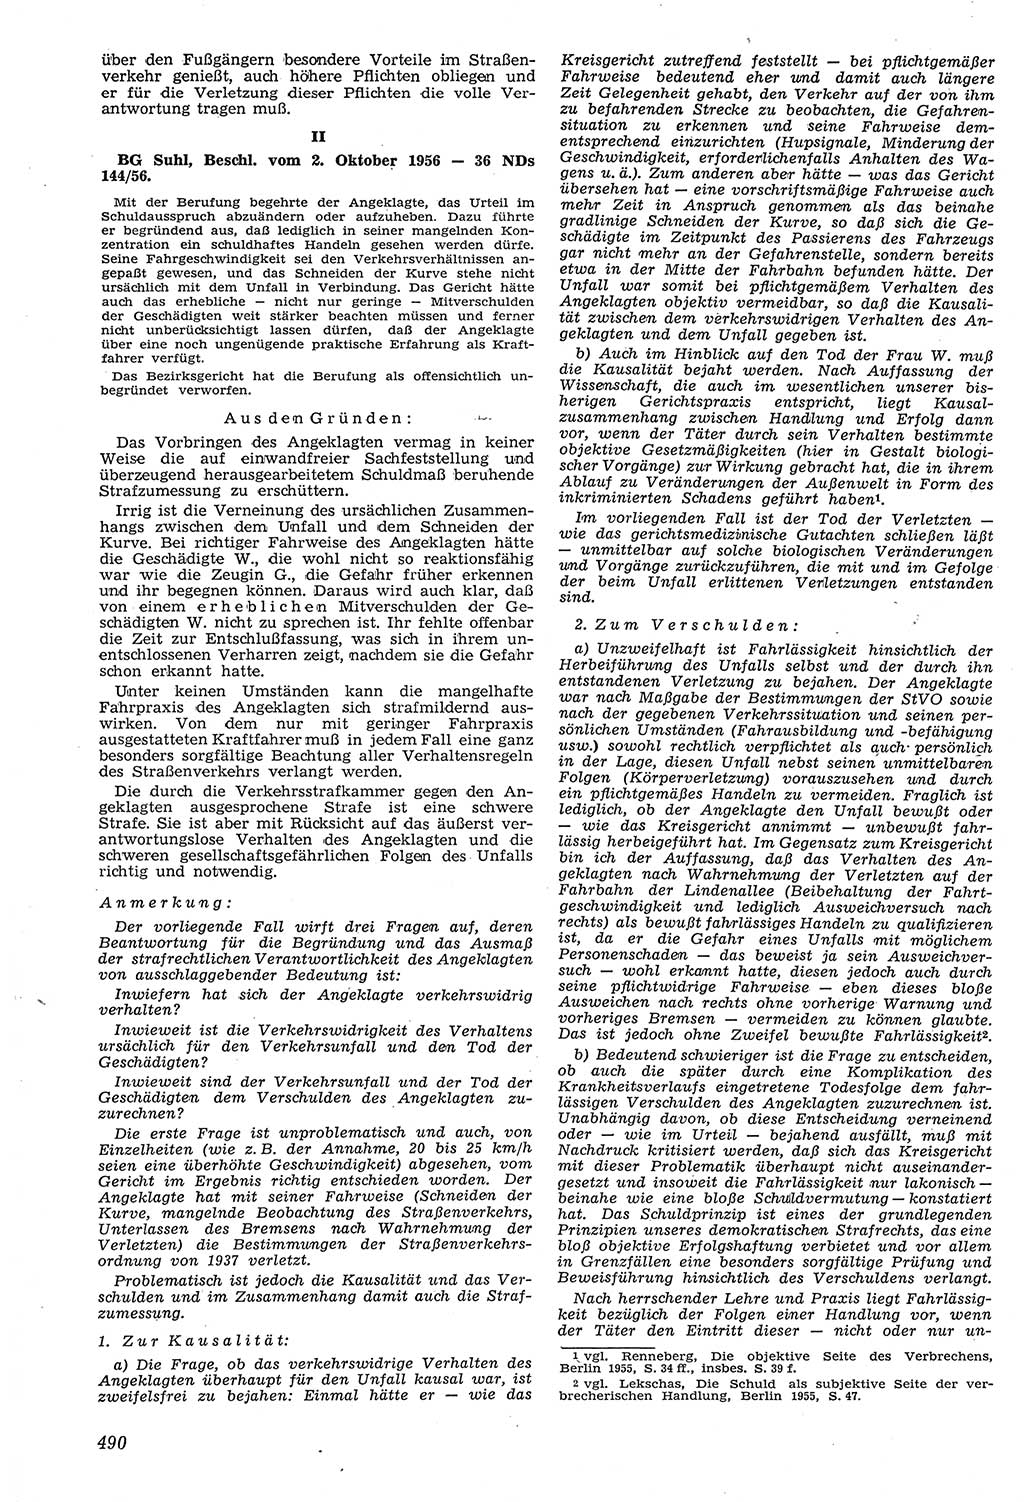 Neue Justiz (NJ), Zeitschrift für Recht und Rechtswissenschaft [Deutsche Demokratische Republik (DDR)], 11. Jahrgang 1957, Seite 490 (NJ DDR 1957, S. 490)